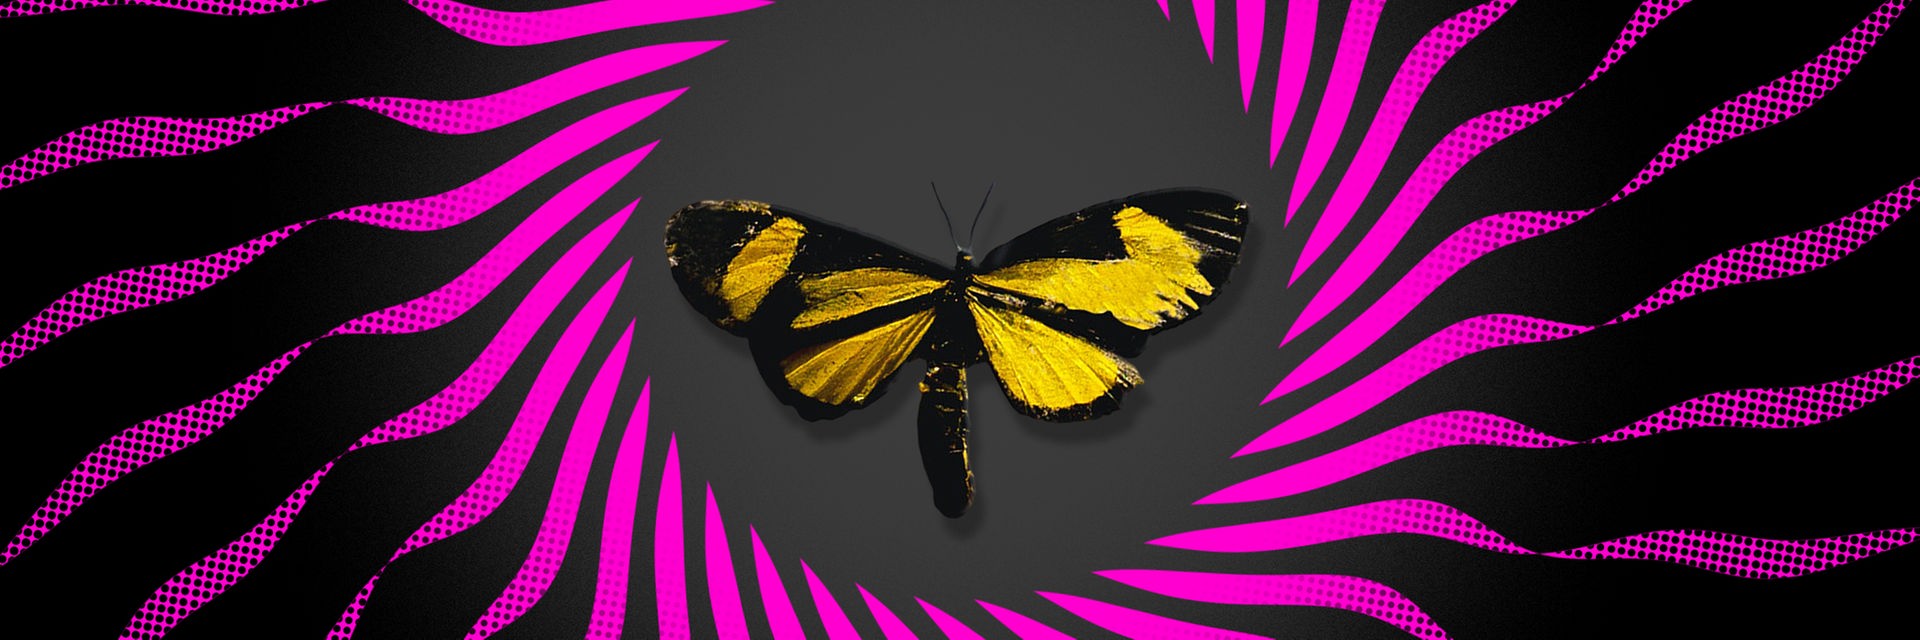 Schmetterlingseffekt - das Logo des Deutschlandfunk-Podcasts zeigt einen gezeichneten Schmetterling in einem Kreis, der einer Sonne ähnelt